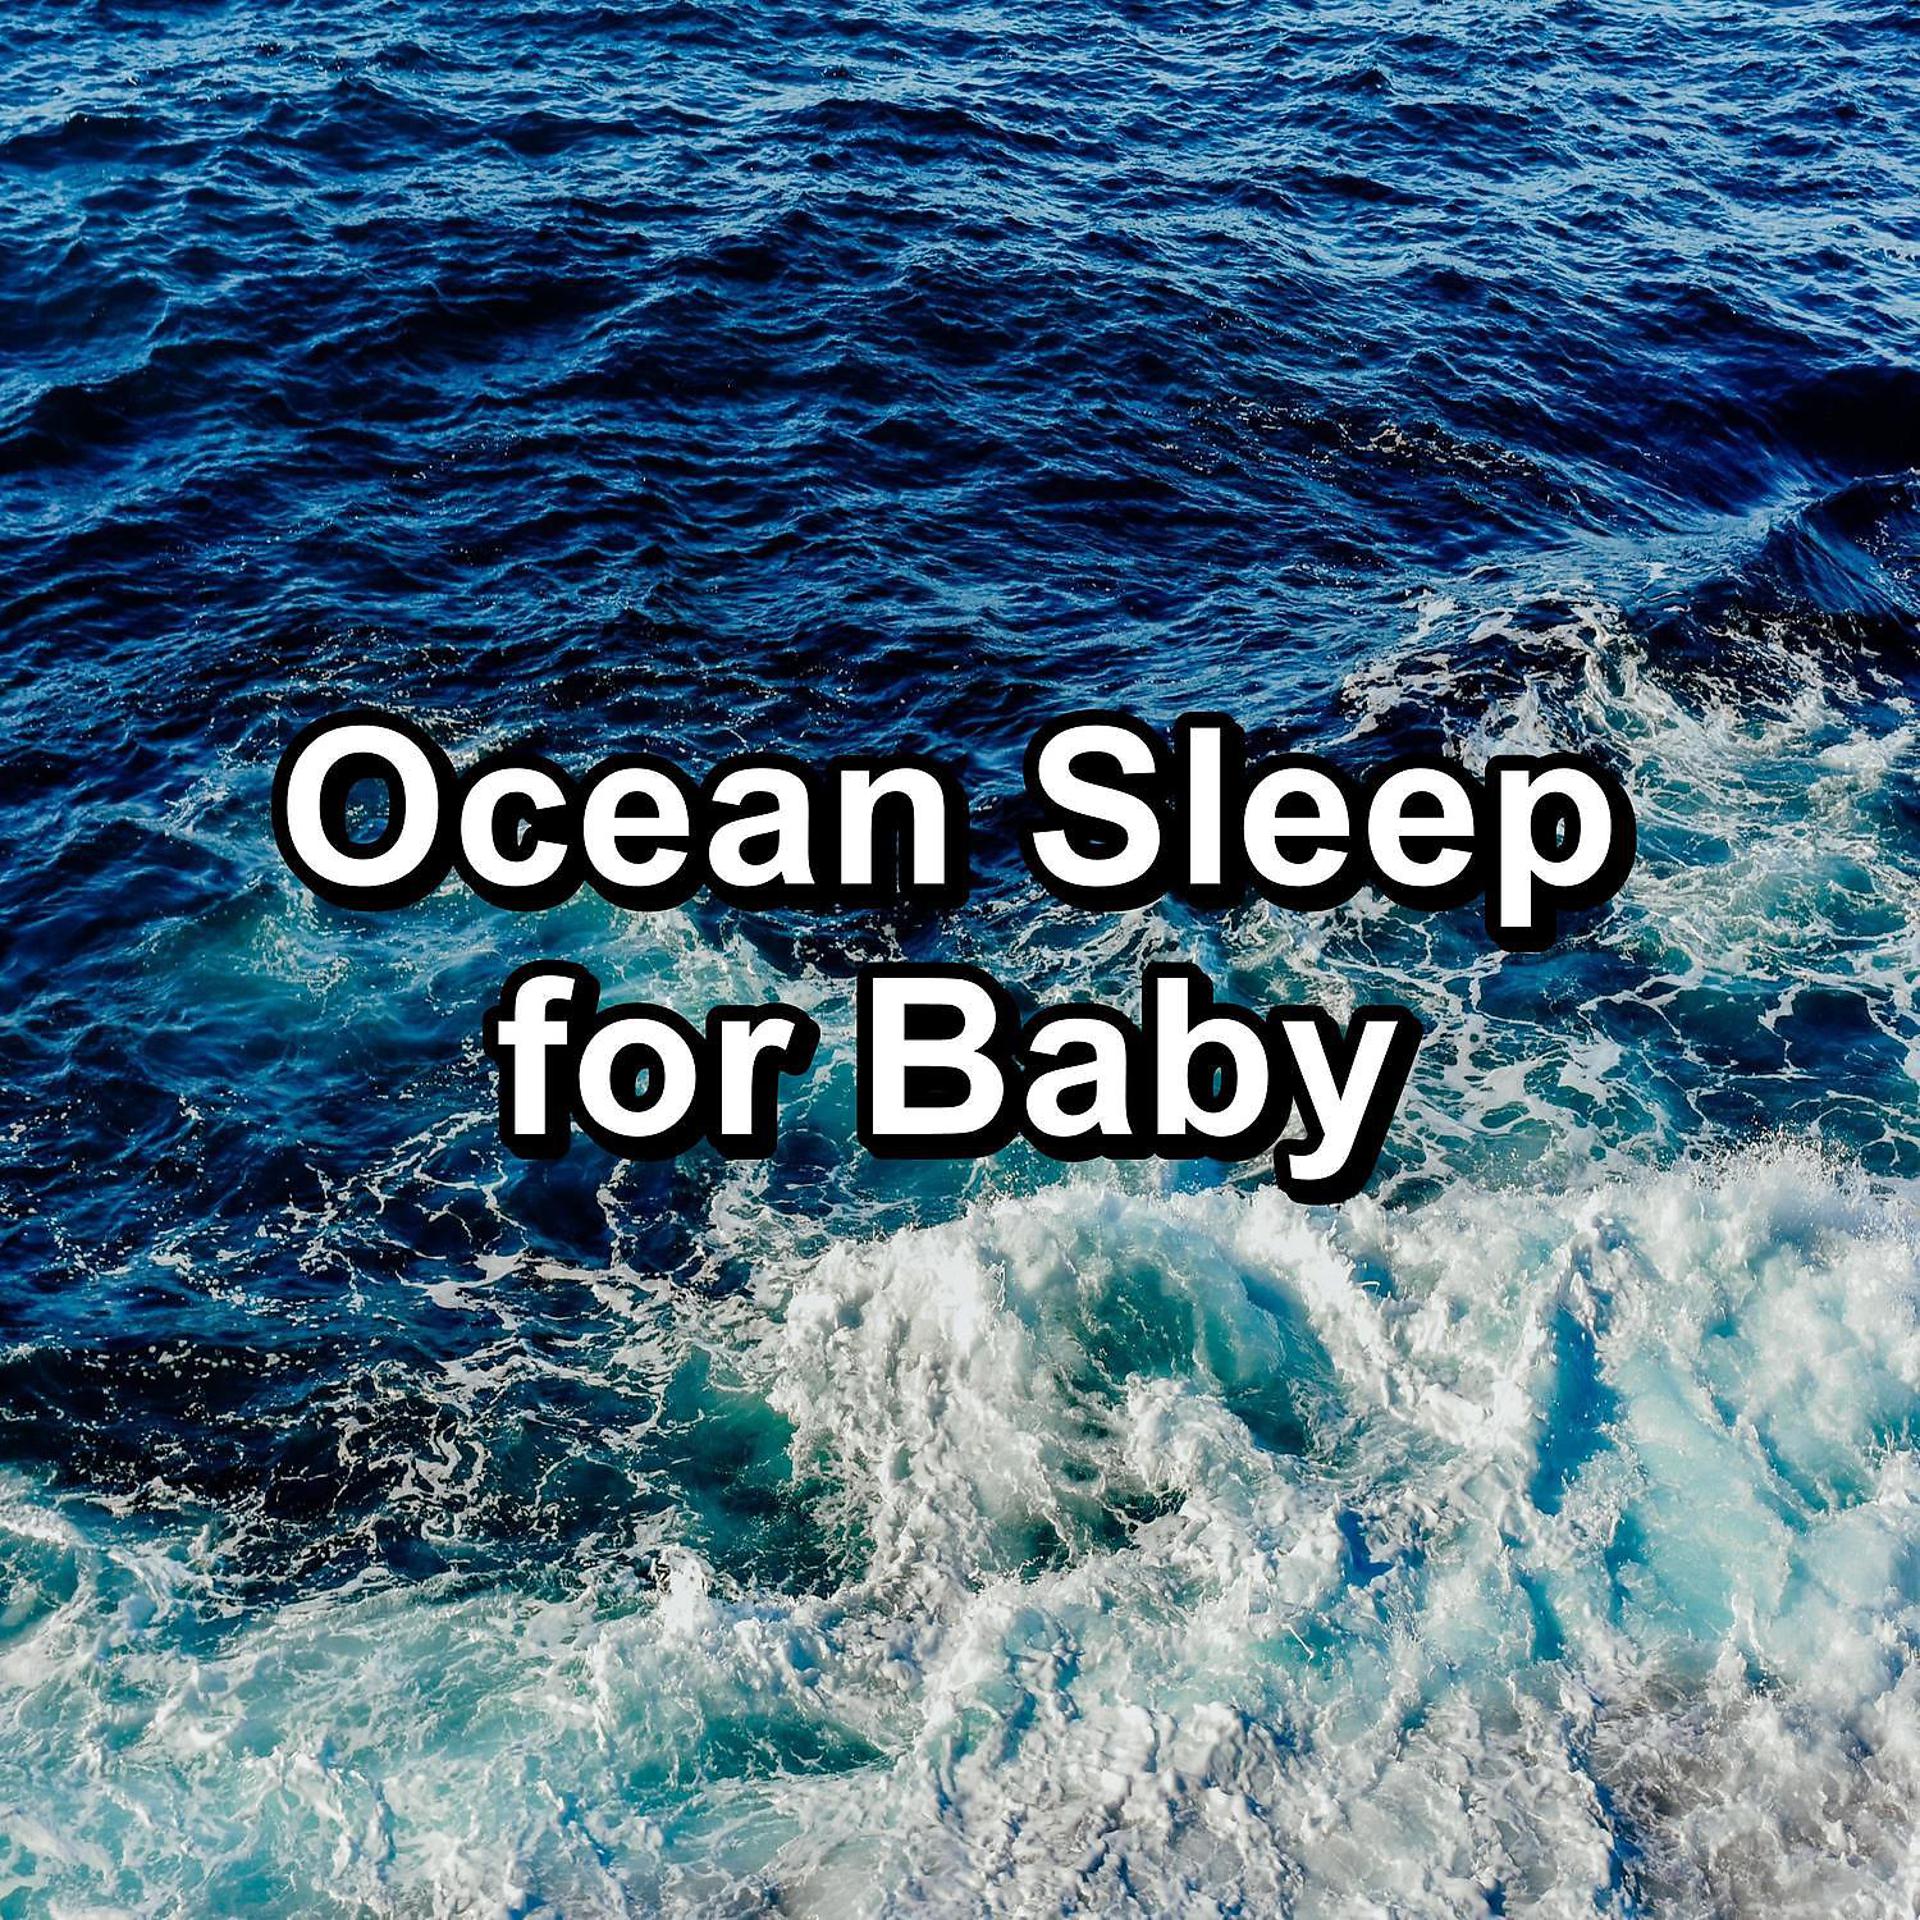 Постер альбома Waves Sound Deep Sleep for Babies